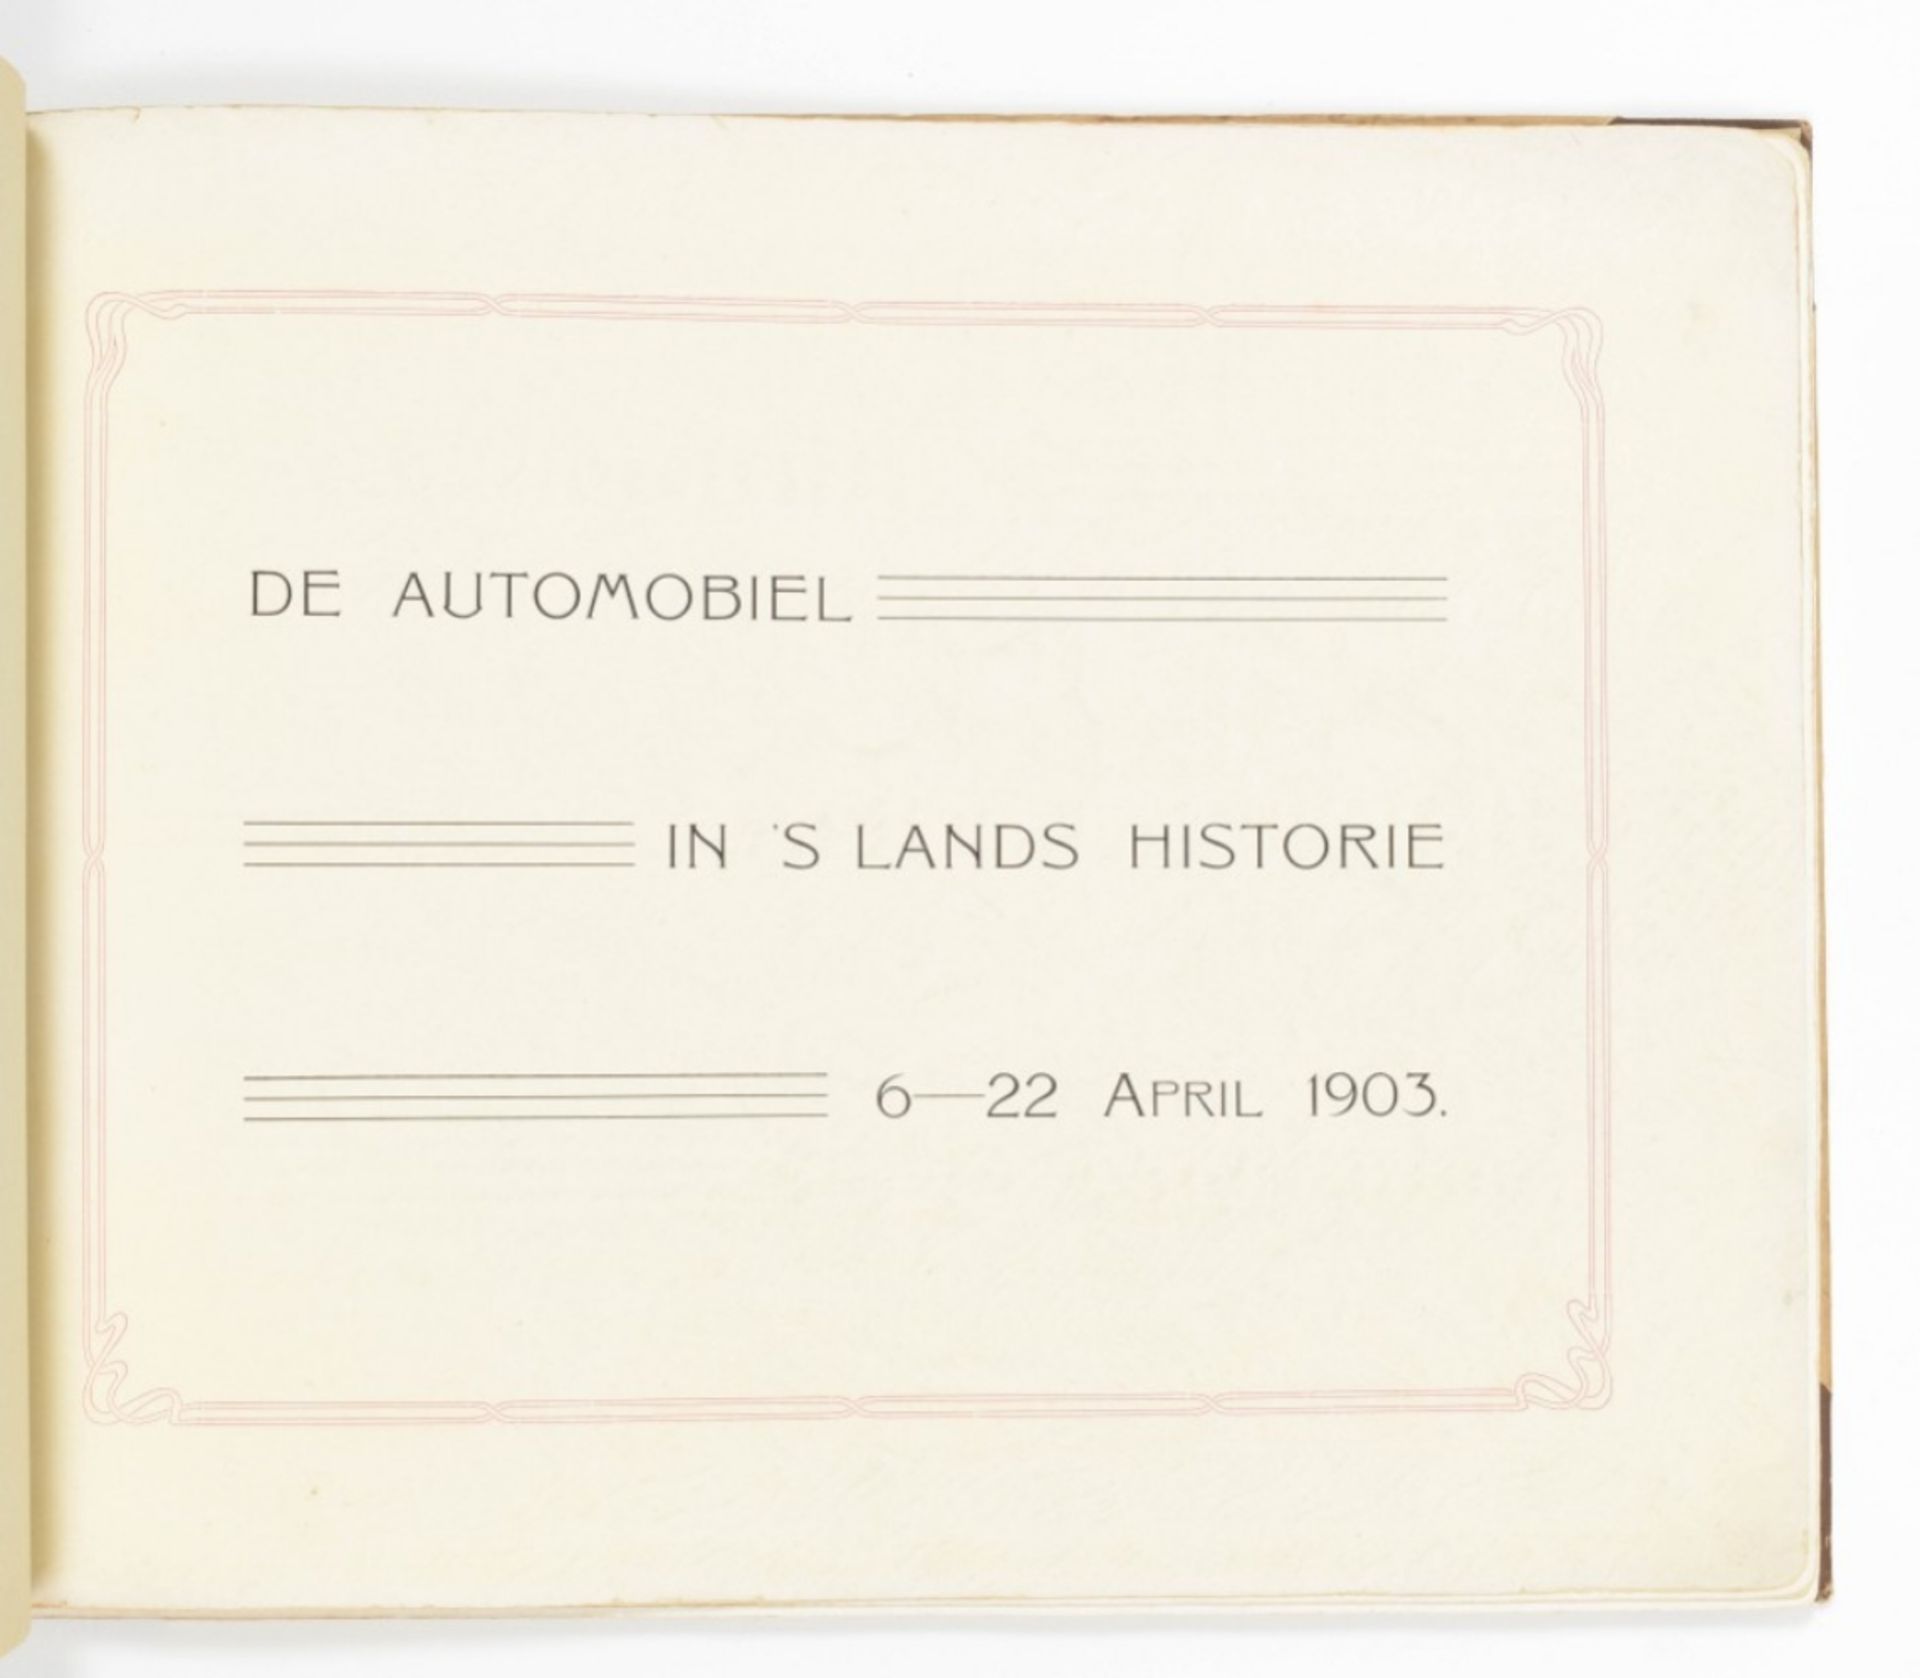 (B. Evert Lugard). De automobiel in 's lands historie 6-22 April 1903 - Image 8 of 8